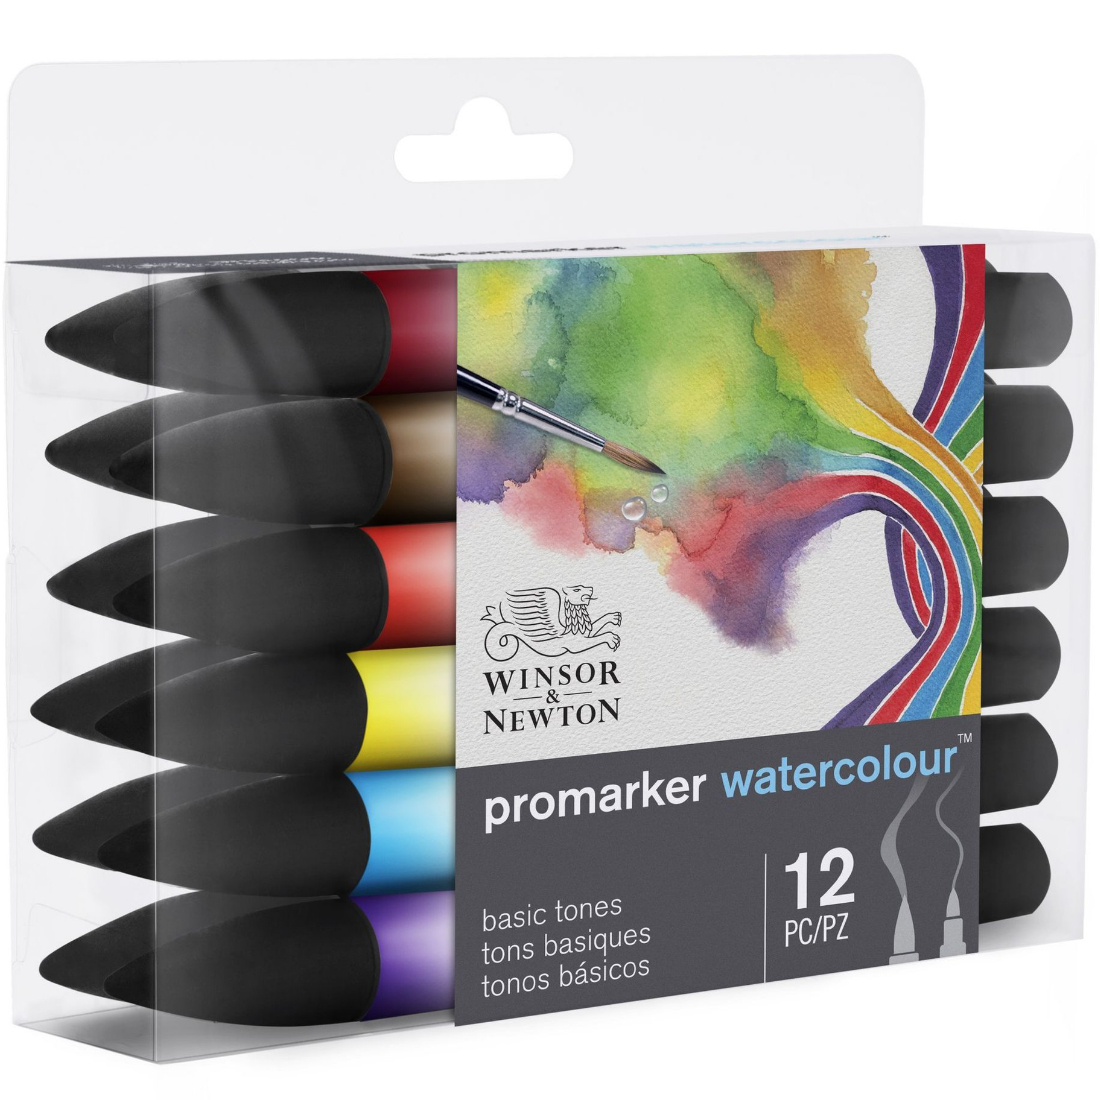 Marcador Promarker Watercolour Tons Básicos 12 Pcs winsor & newton